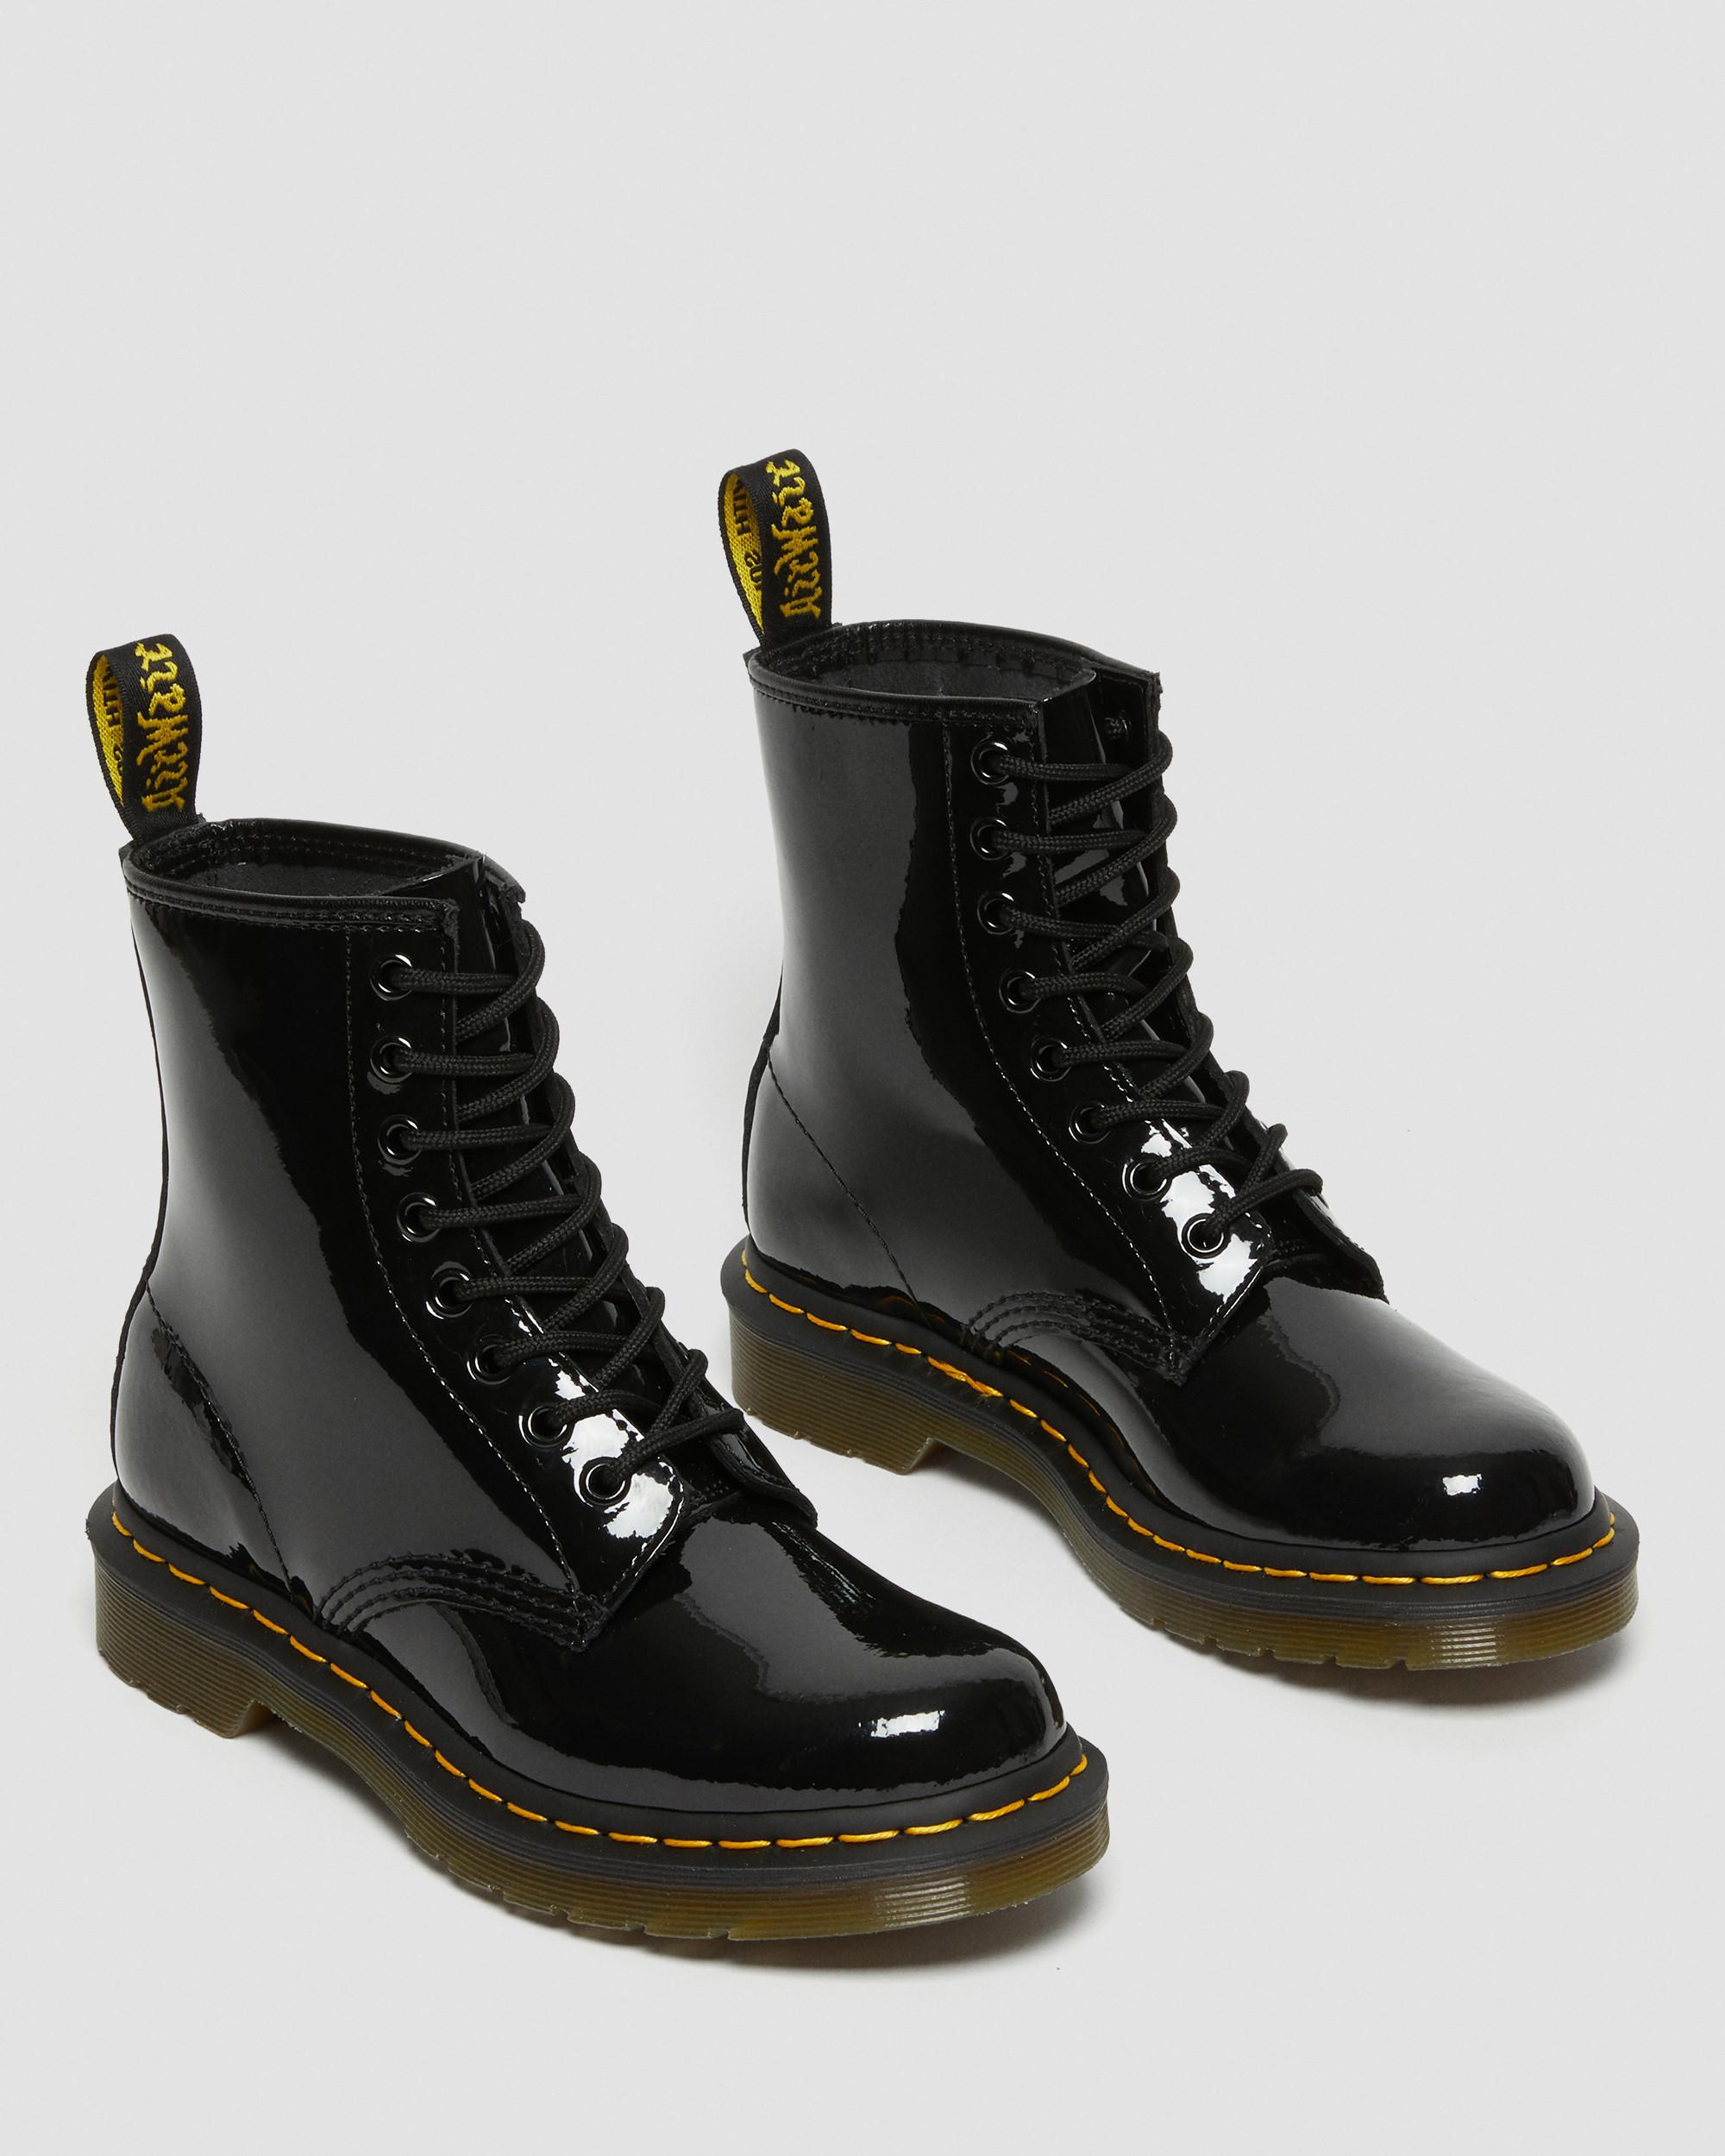 dark martens boots